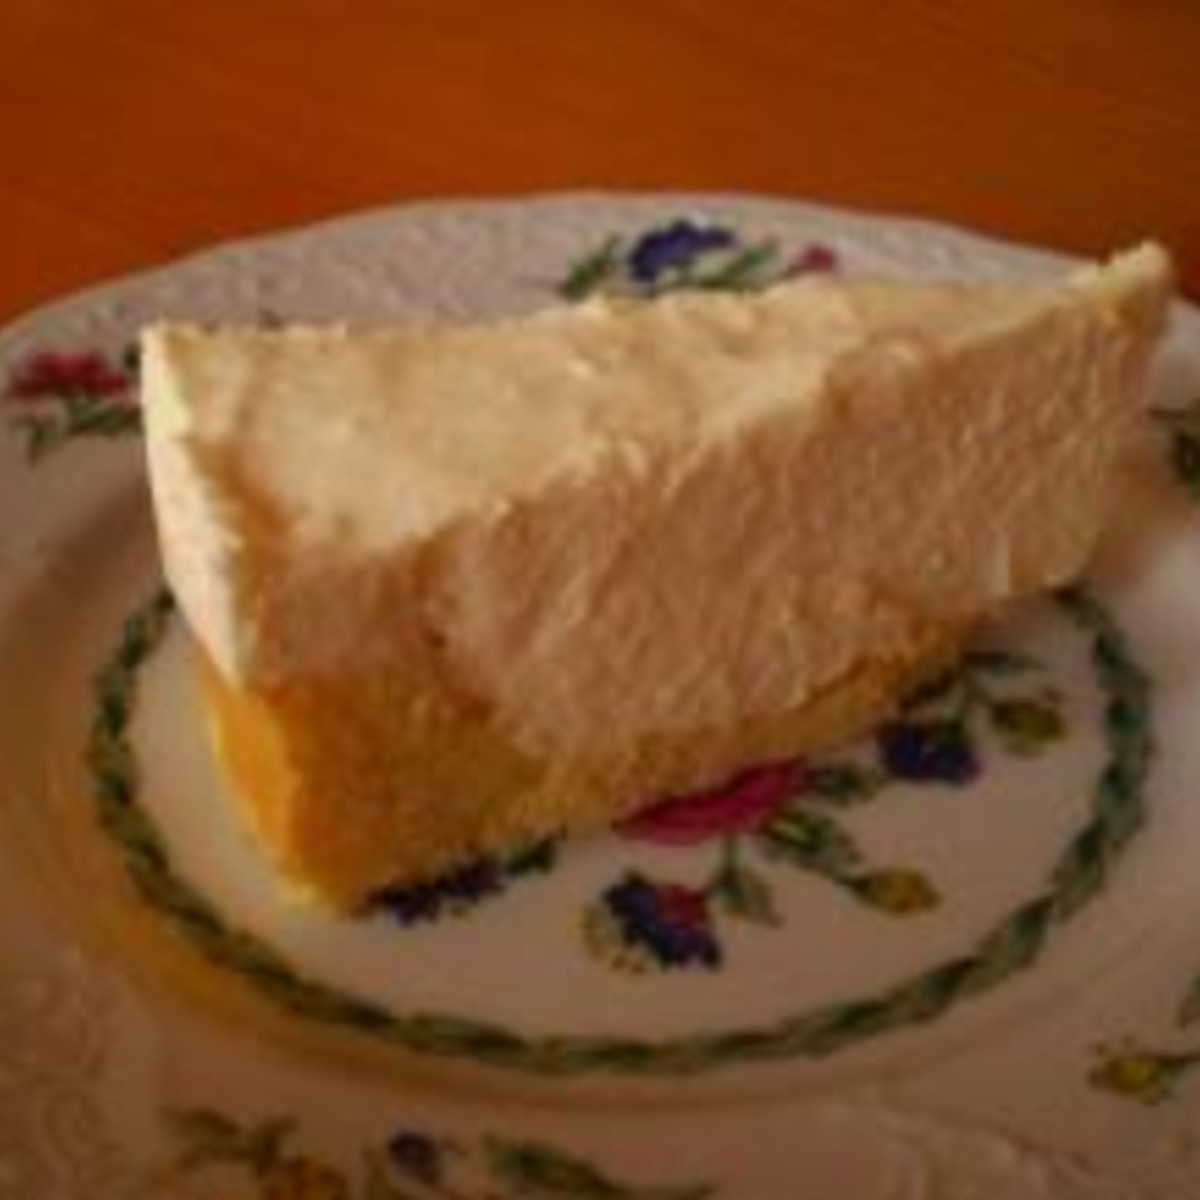 バター無しで台から作る レアチーズケーキ レシピ 作り方 By Mask 0812 楽天レシピ